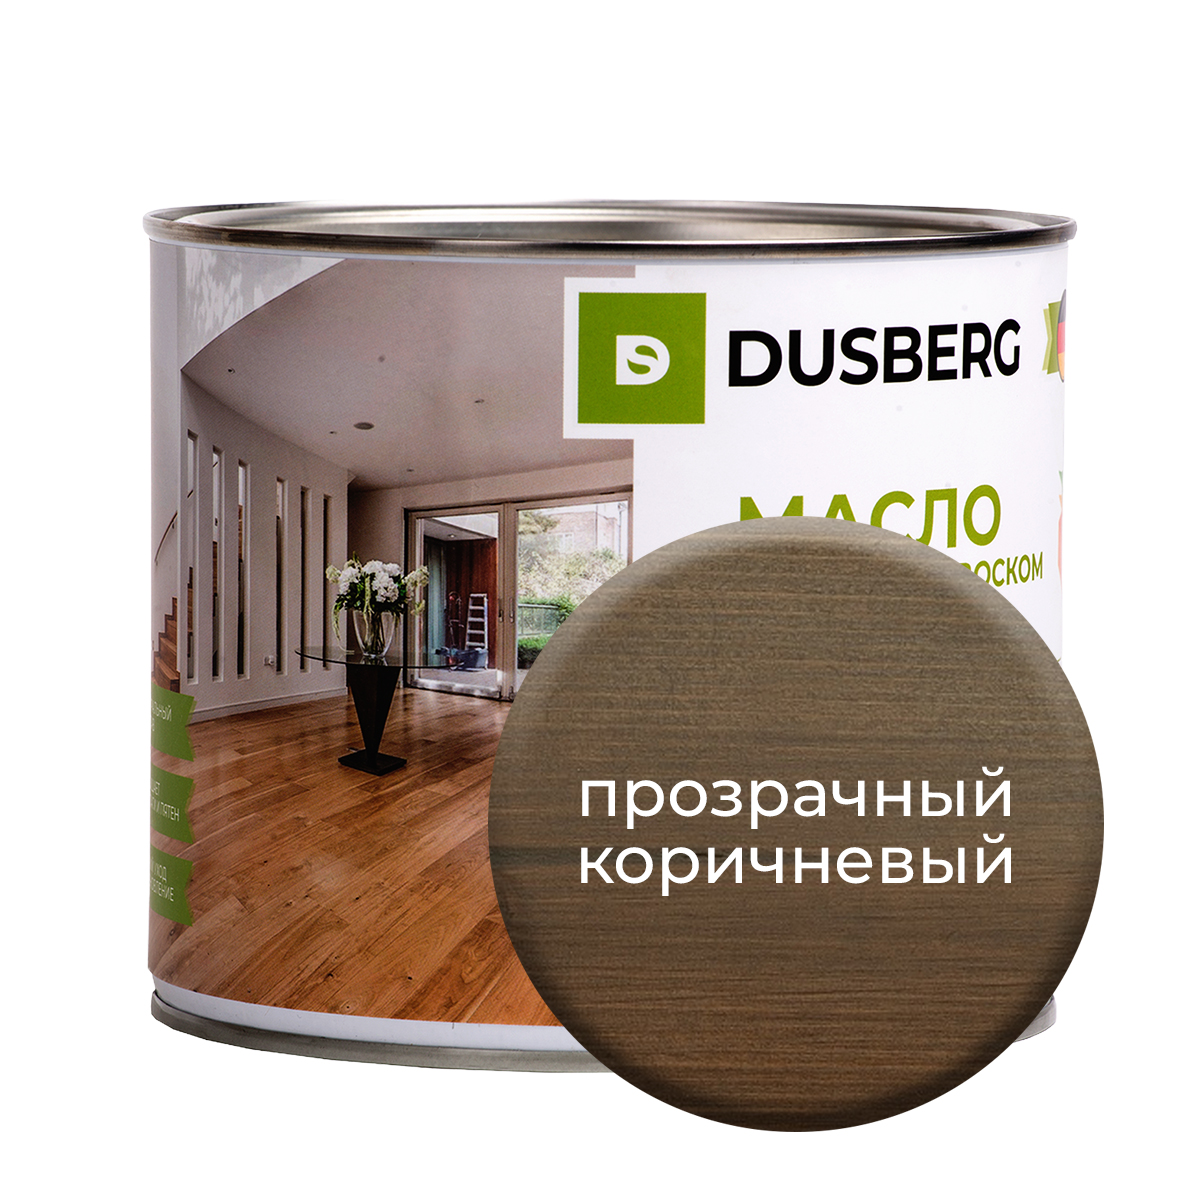 Масло Dusberg с твердым воском на бесцветной основе, 2 л Прозрачно-коричневый масло dusberg с твердым воском на бес ной основе 2 л лиственница